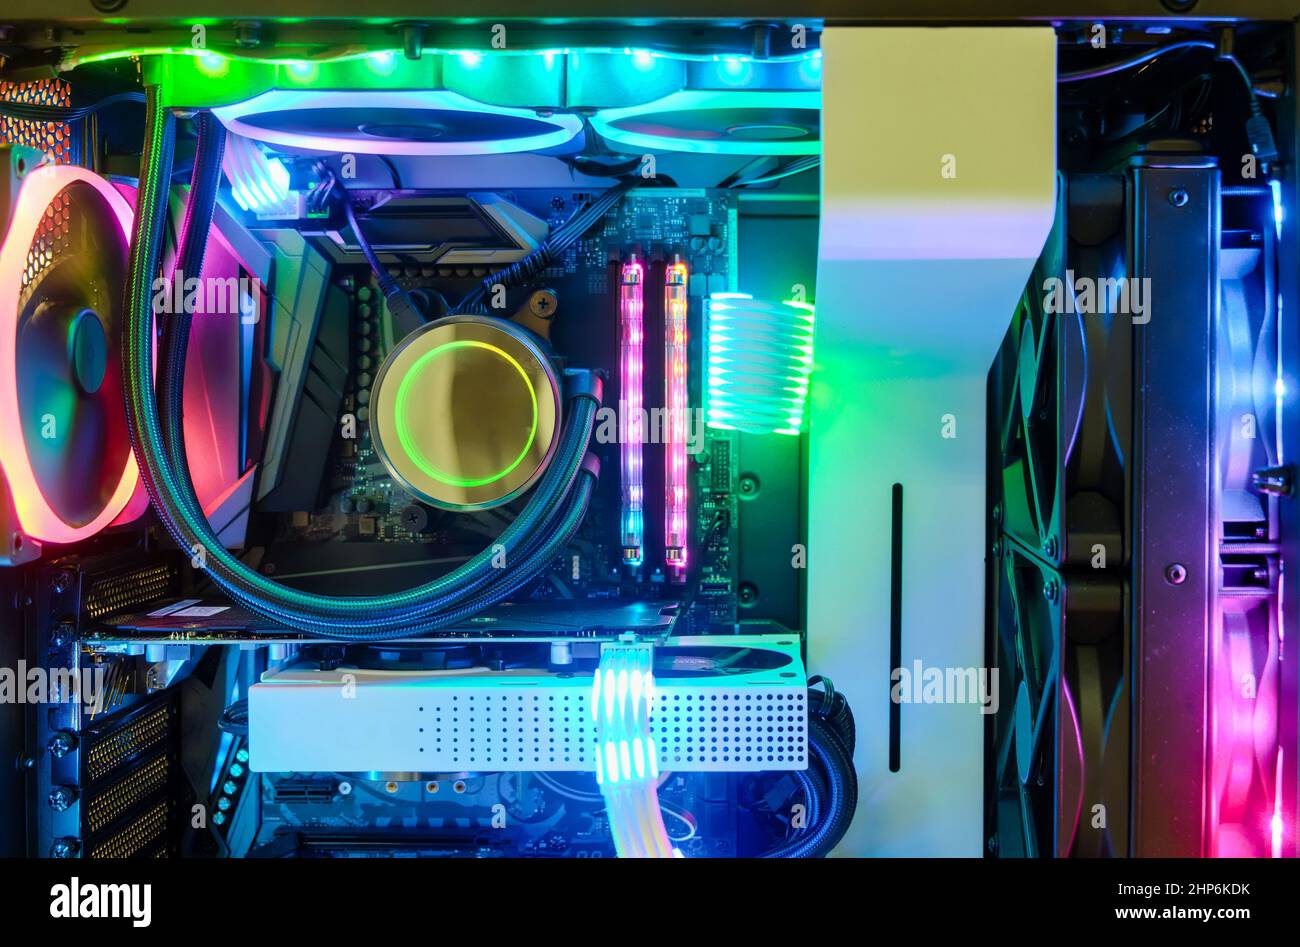 Primo piano e all'interno del PC desktop Gaming e sistema CPU con ventola di raffreddamento e LED RGB multicolore per mostrare lo stato in modalità di lavoro Foto Stock